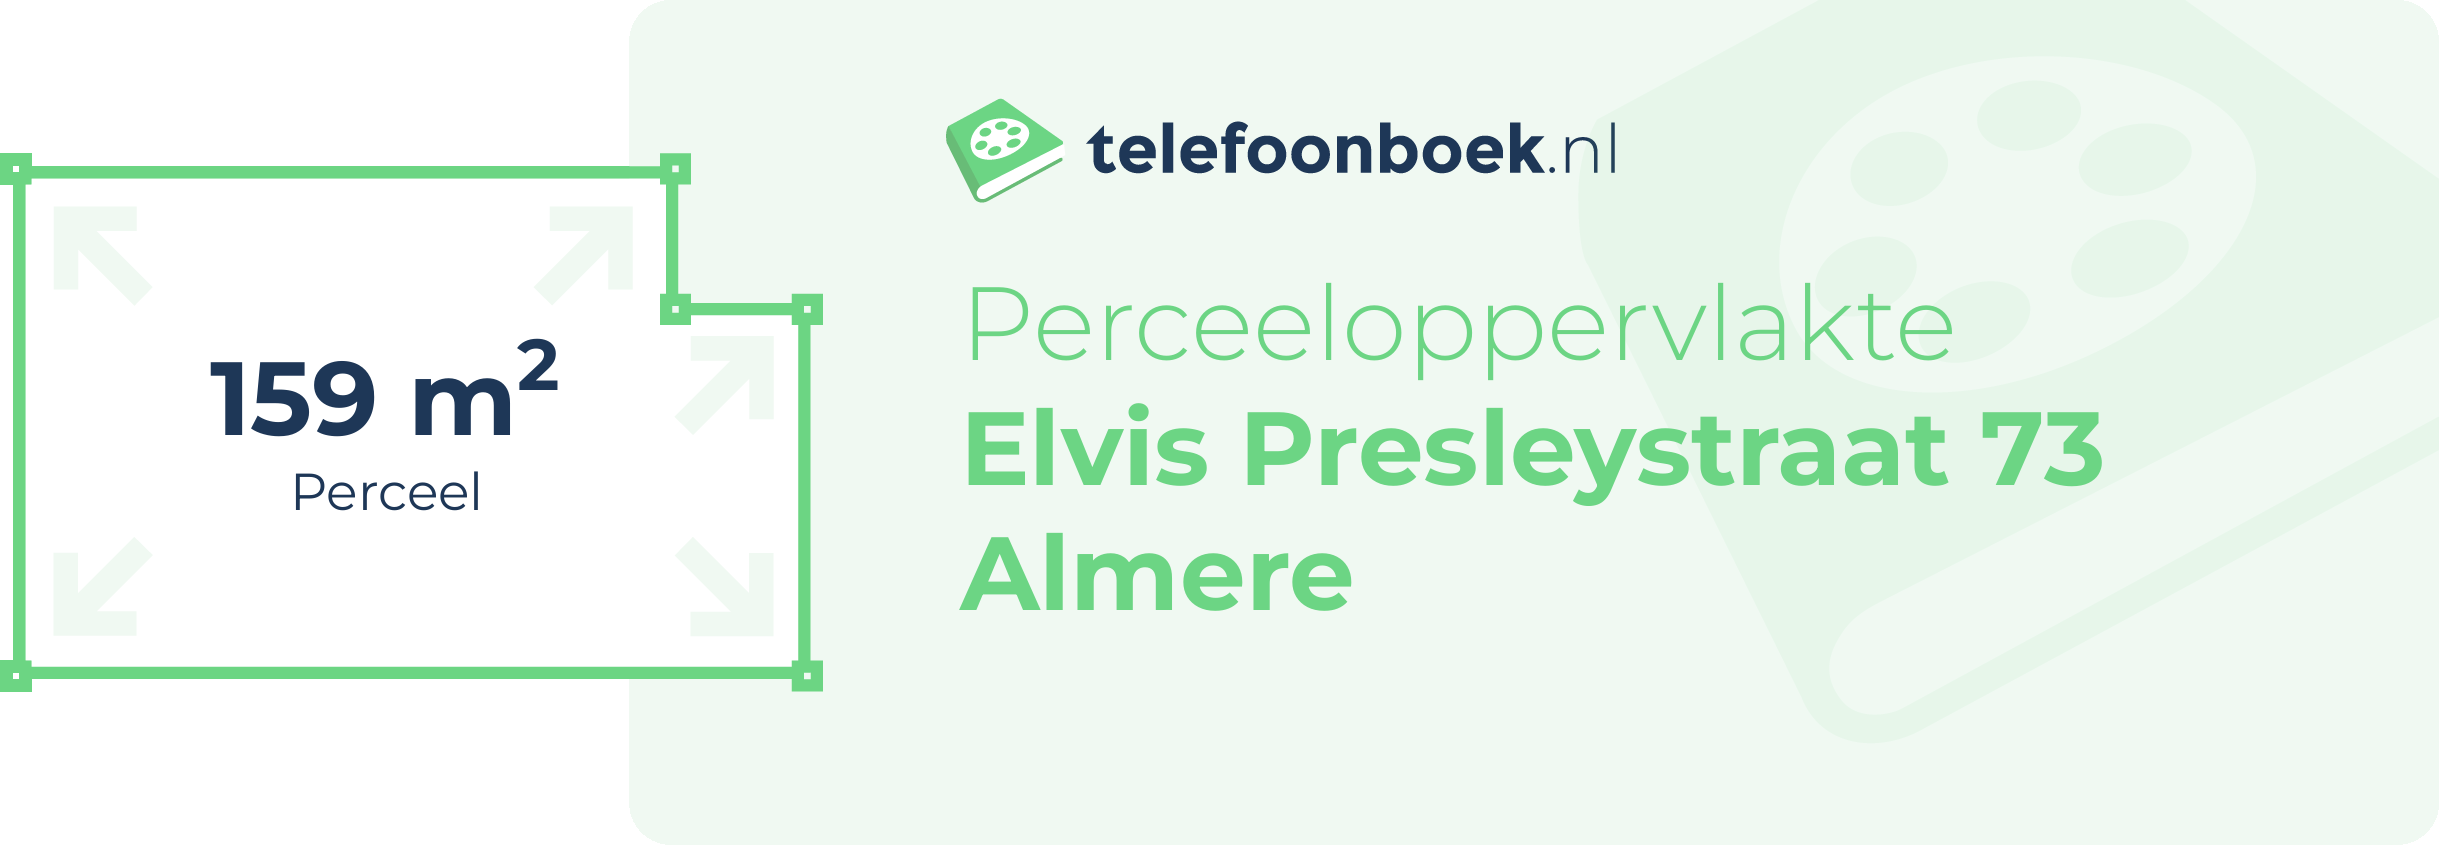 Perceeloppervlakte Elvis Presleystraat 73 Almere